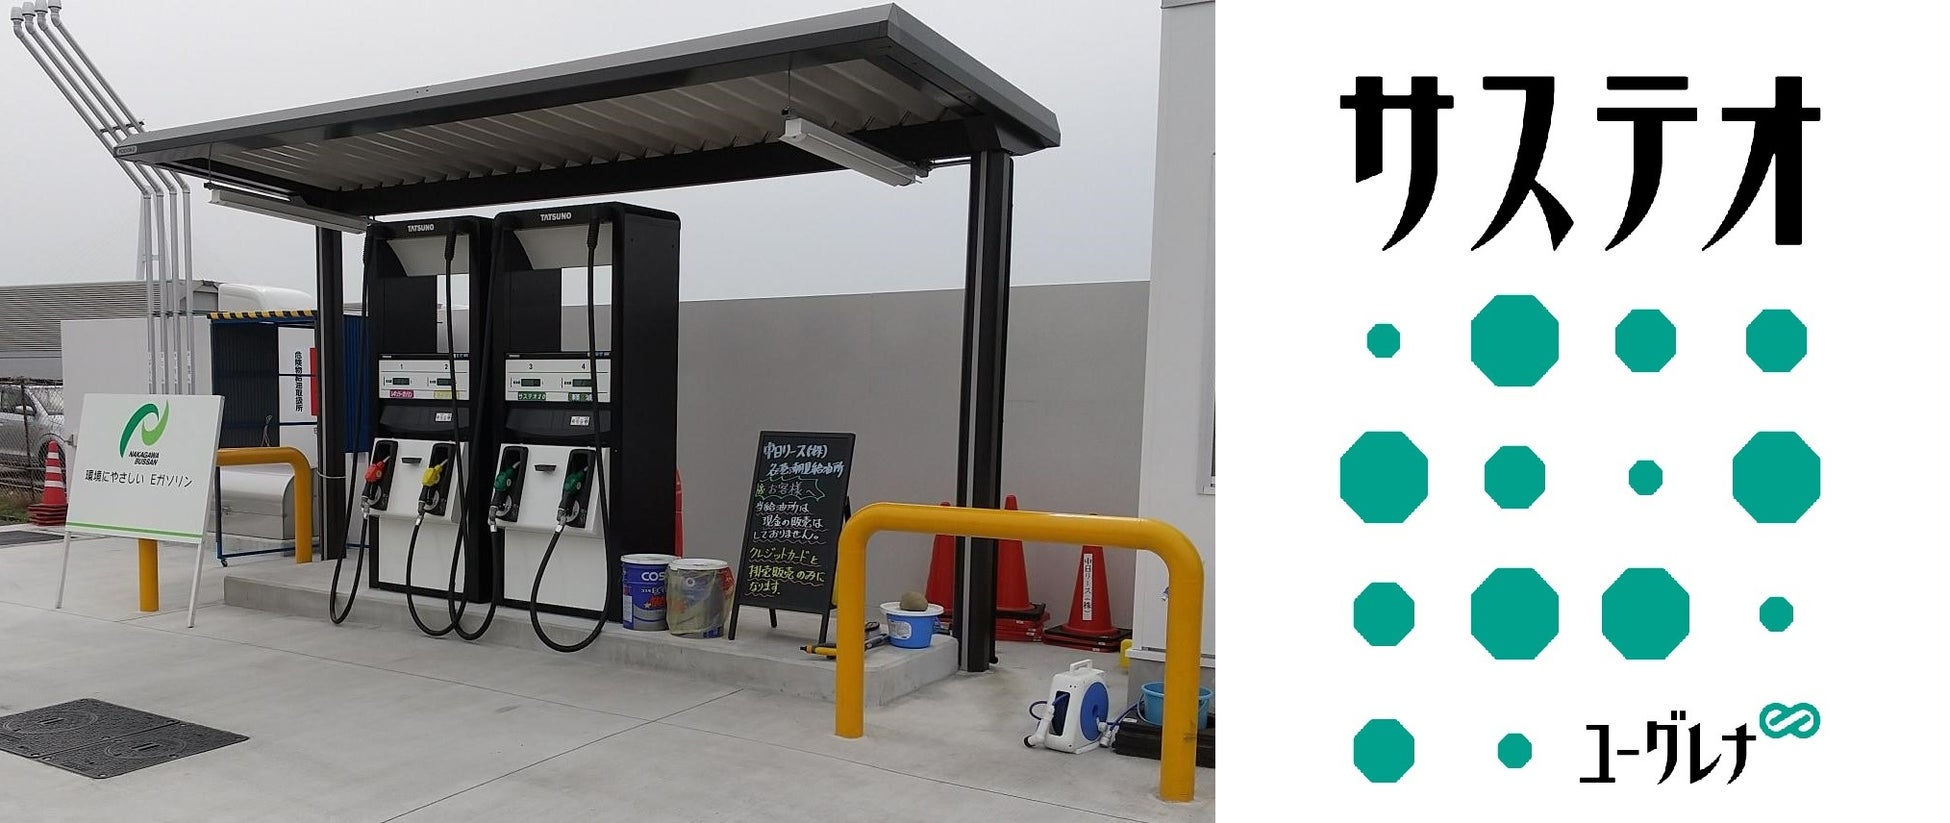 サービスステーション（ガソリンスタンド）で次世代バイオディーゼル燃料の一般向け継続販売を開始のサブ画像1_名港潮見給油所